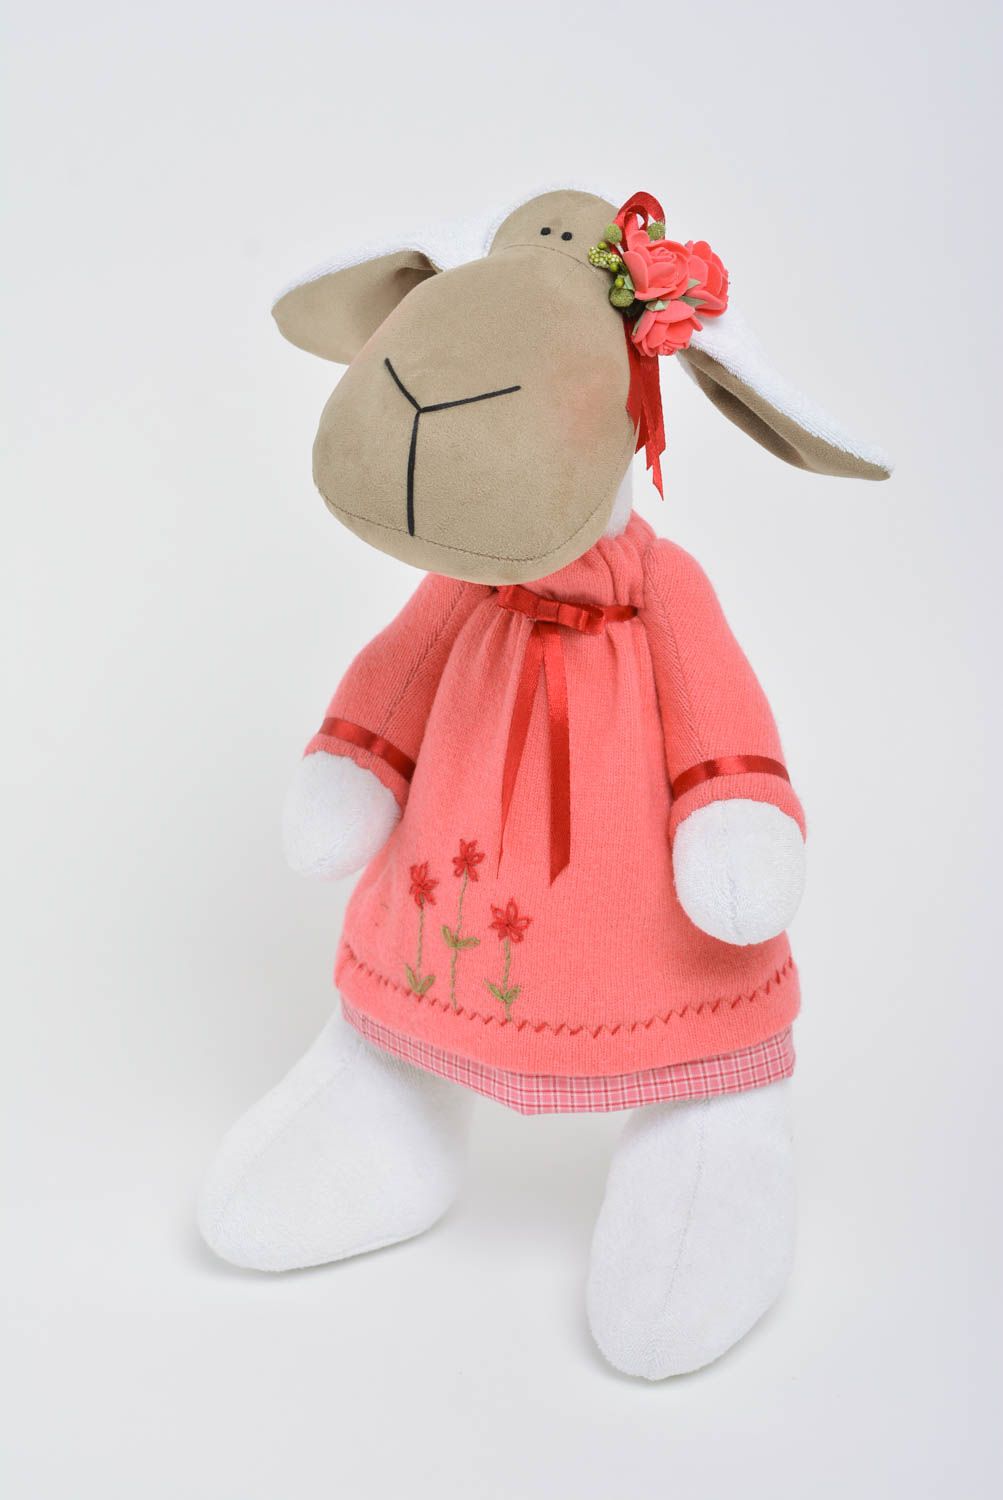 Handgemachtes Spielzeug aus Stoff in Form vom Nilpferd in rosafarbenem Kleid foto 1